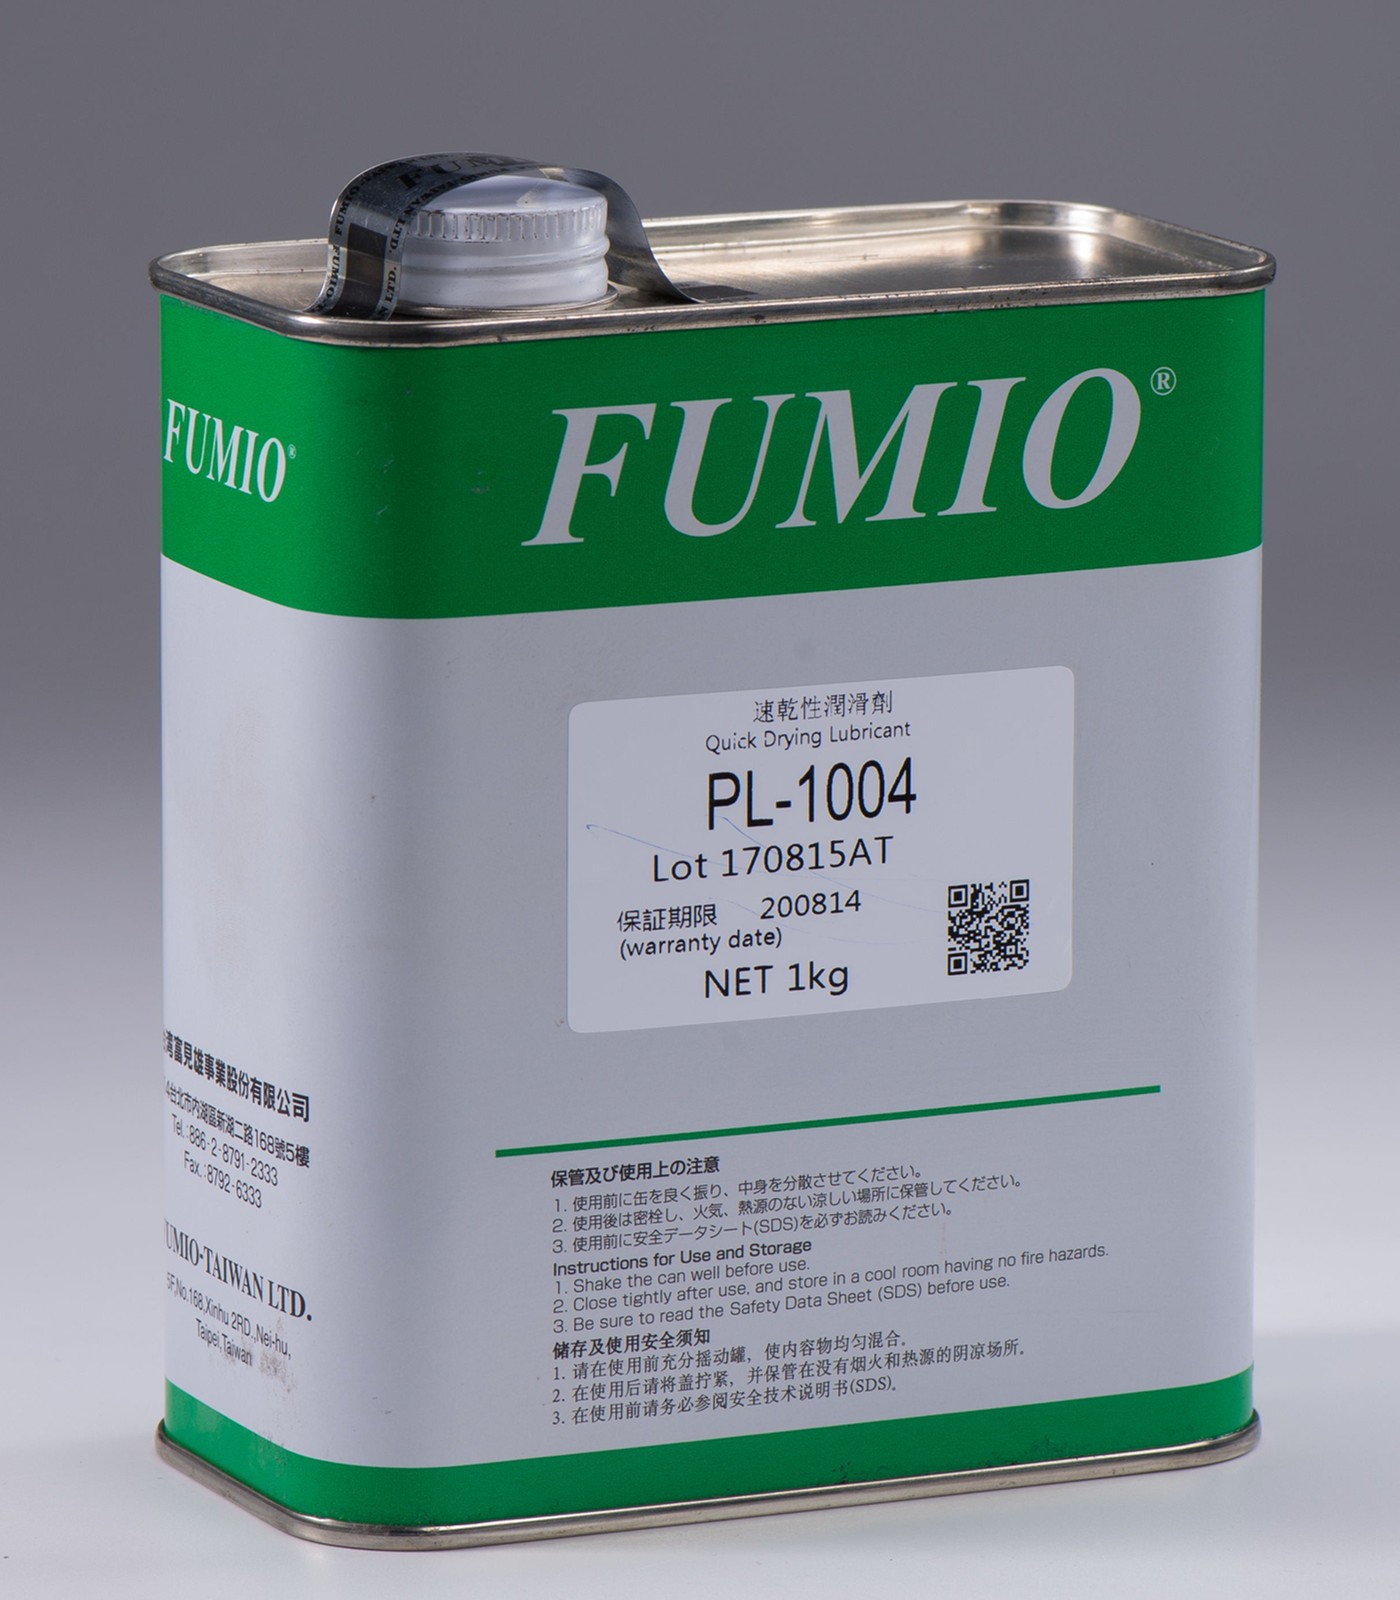 FUMIO PL-1004